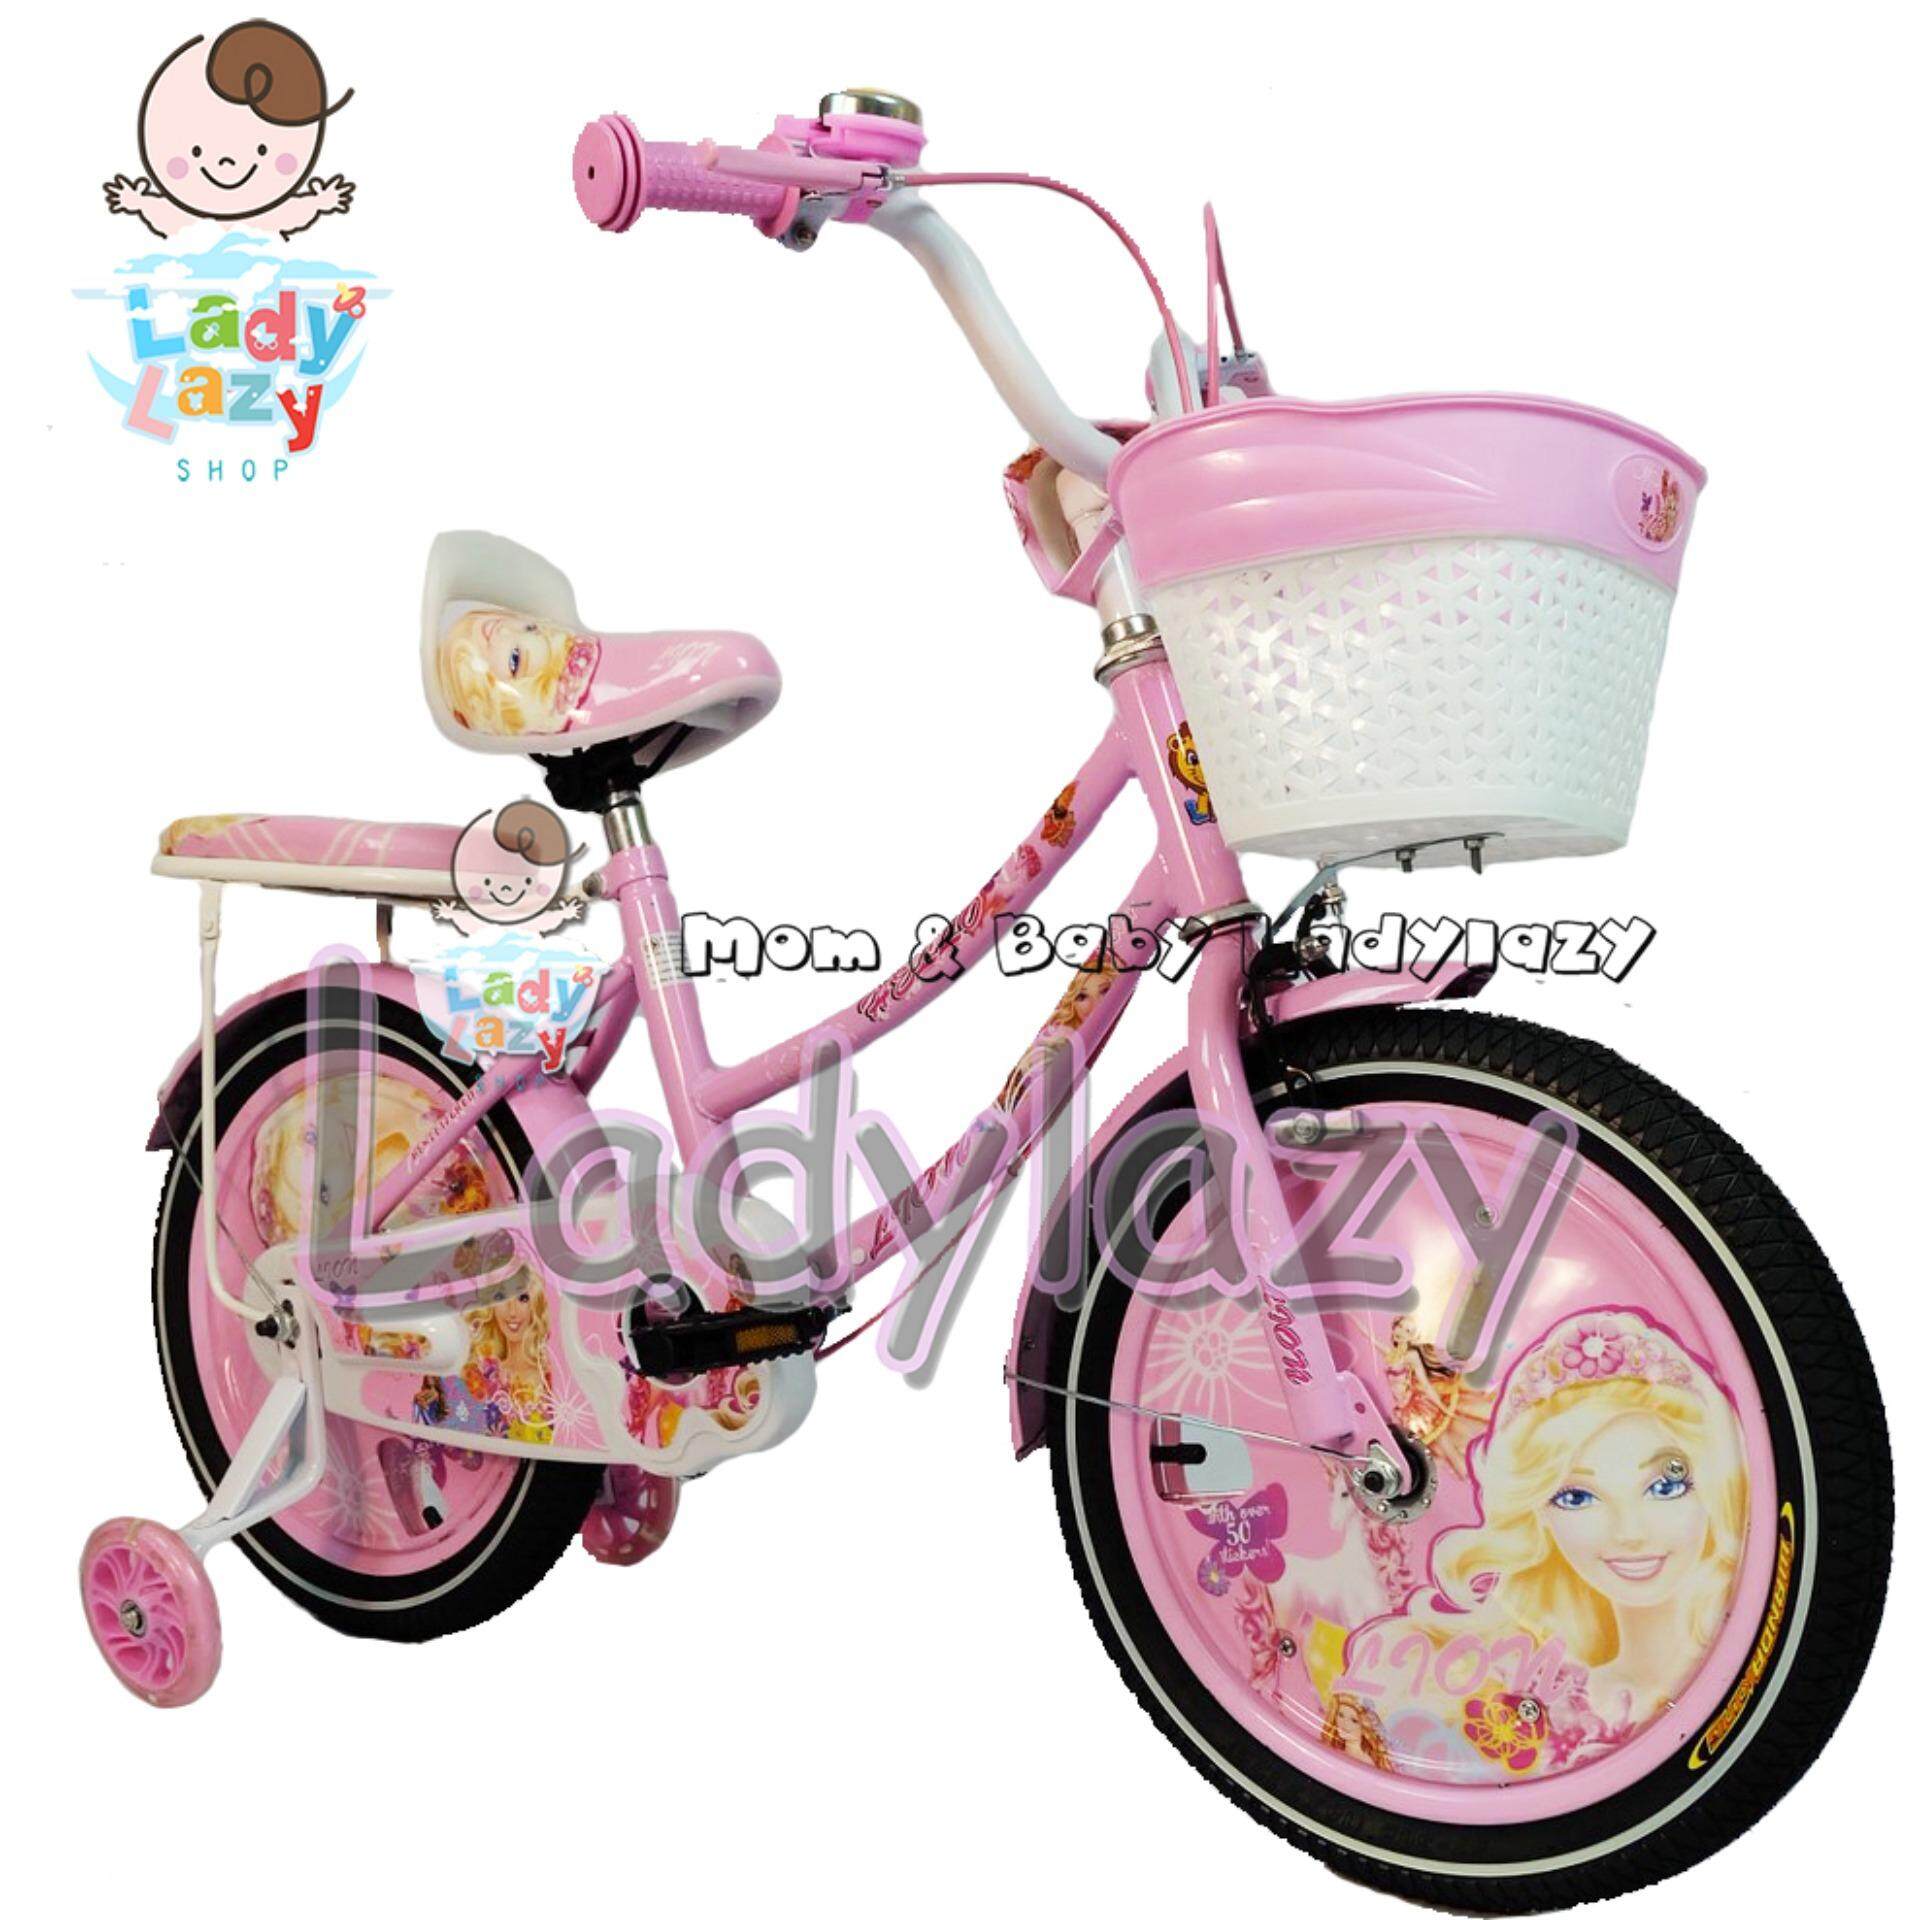 ladylazyจักรยานเด็ก ลายบาบี้แบร์ No.4332 16 นิ้ว สีชมพูอ่อน